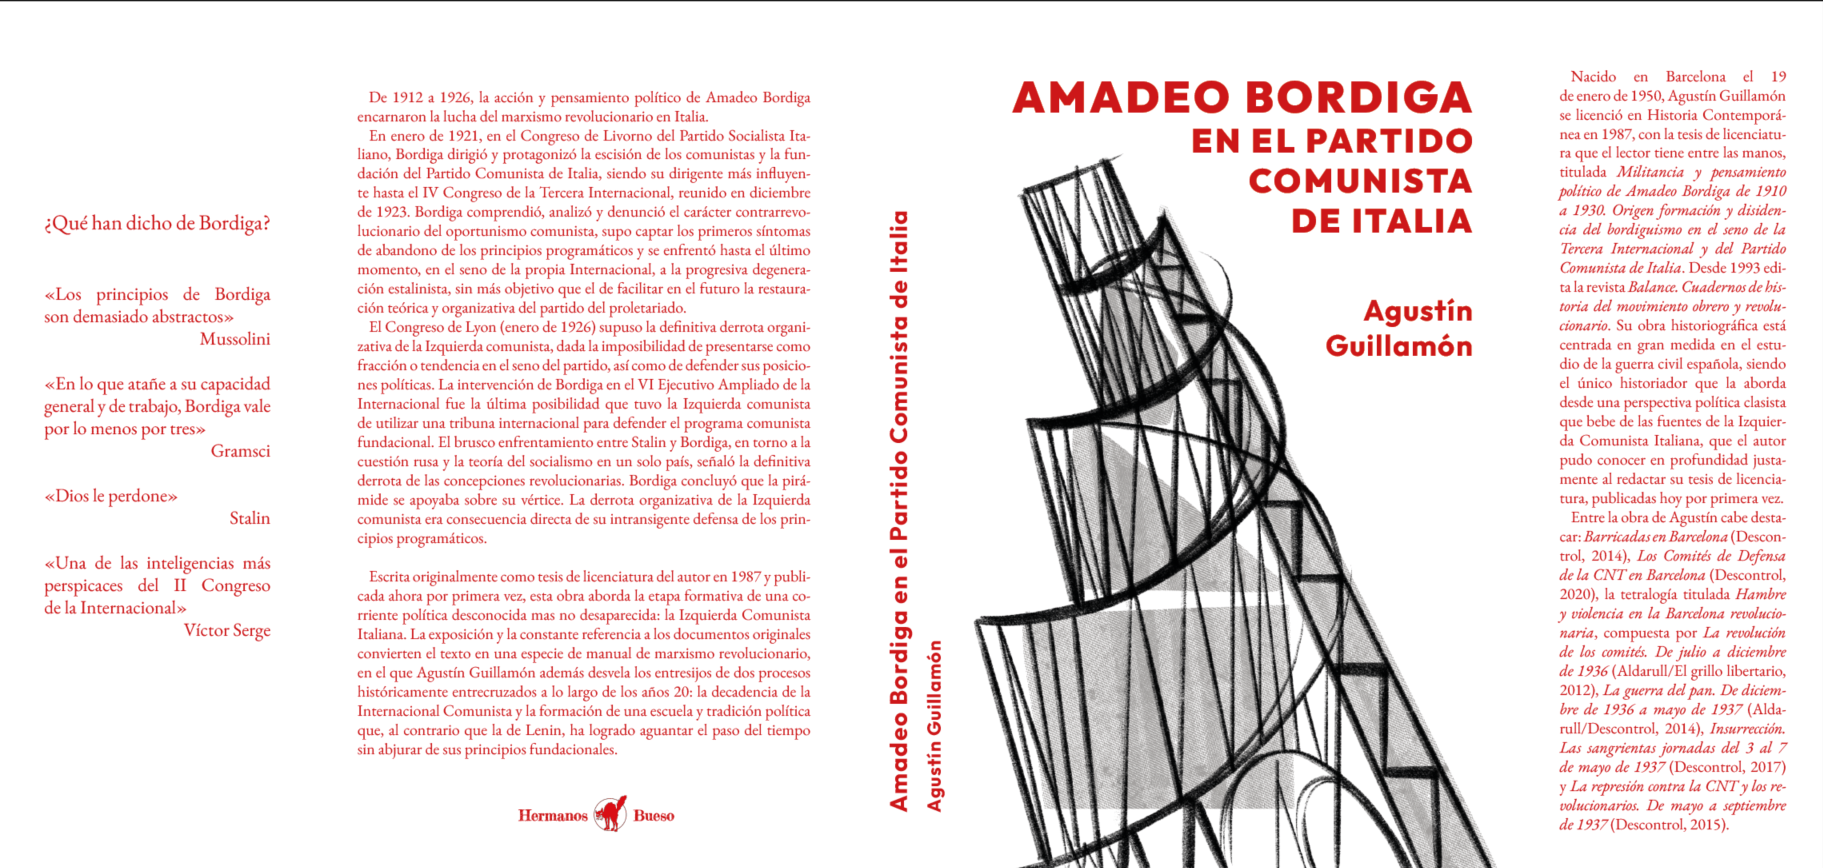 PRESENTACIÓN DEL LIBRO “Amadeo Bordiga en el Partido comunista de Italia”, de Agustín Guillamón